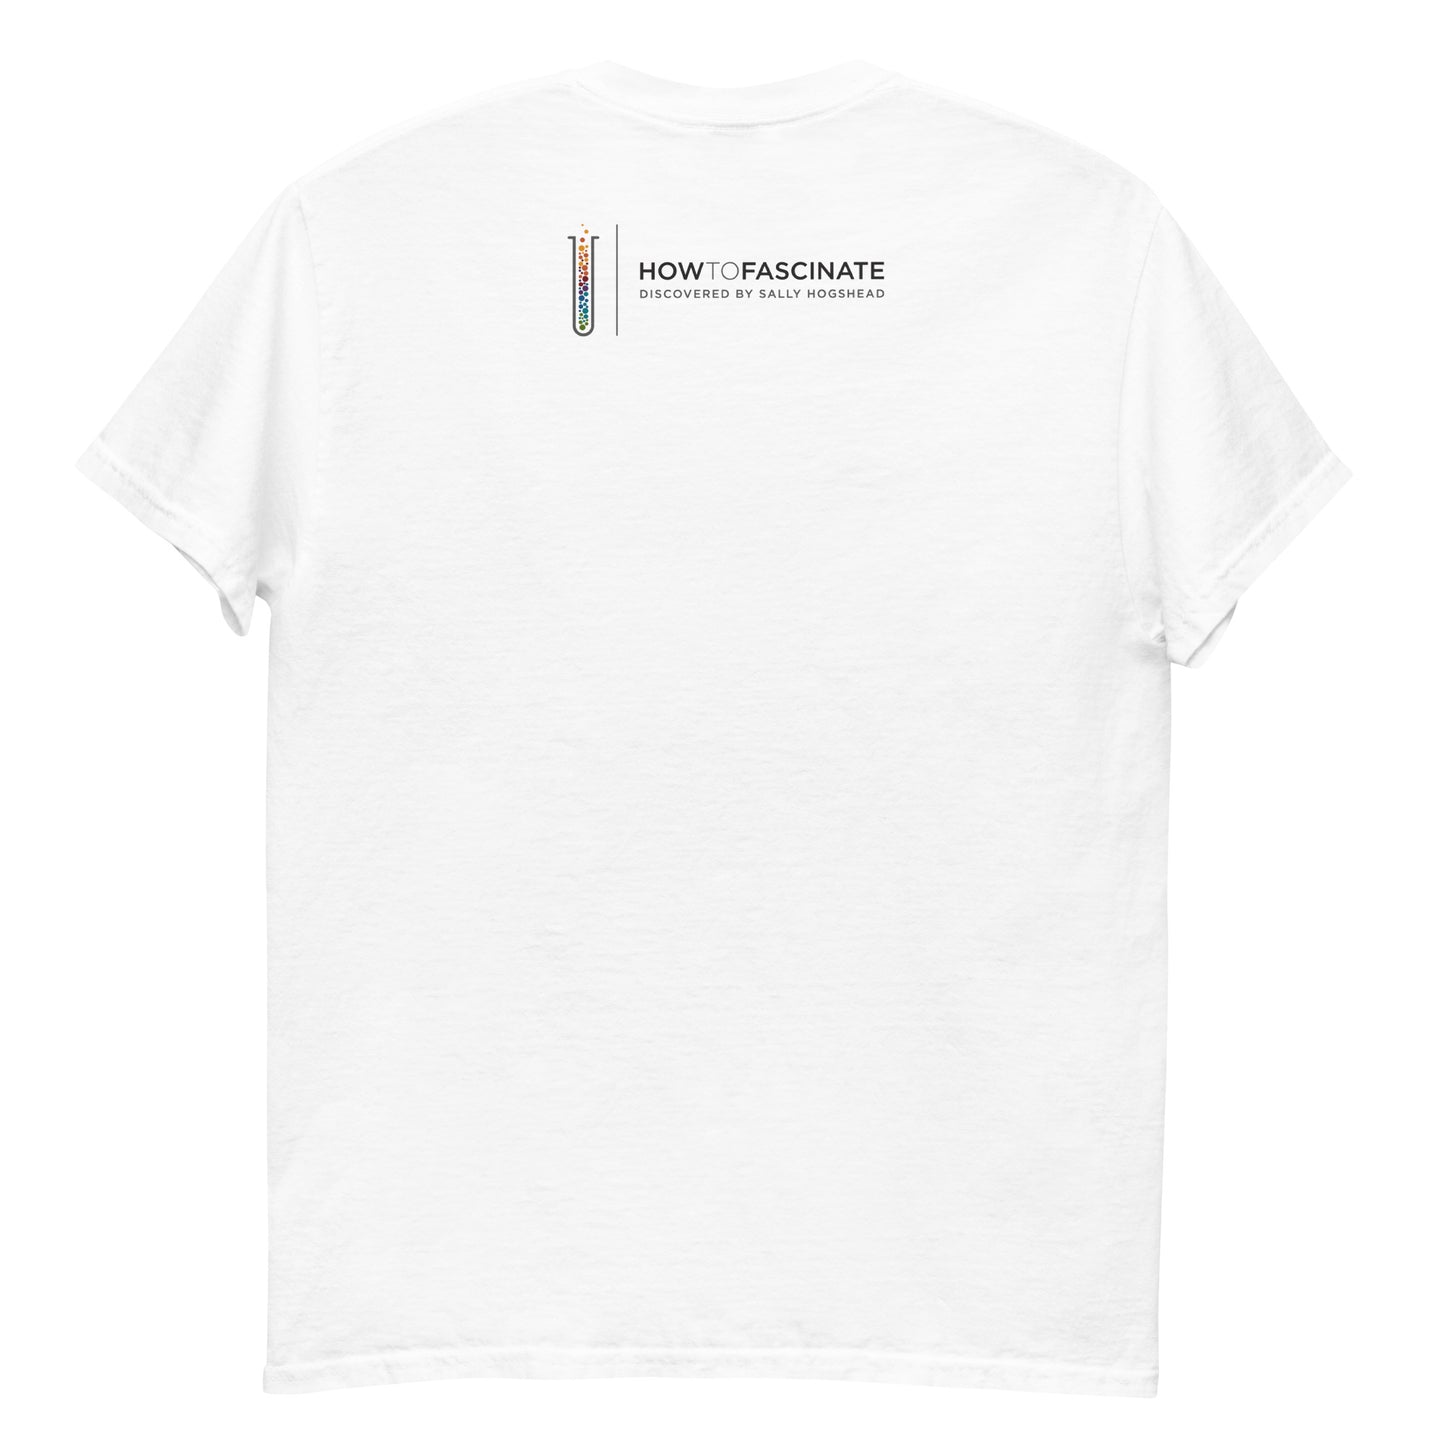 The Trendsetter - Men's Archetype short sleeve t-shirt